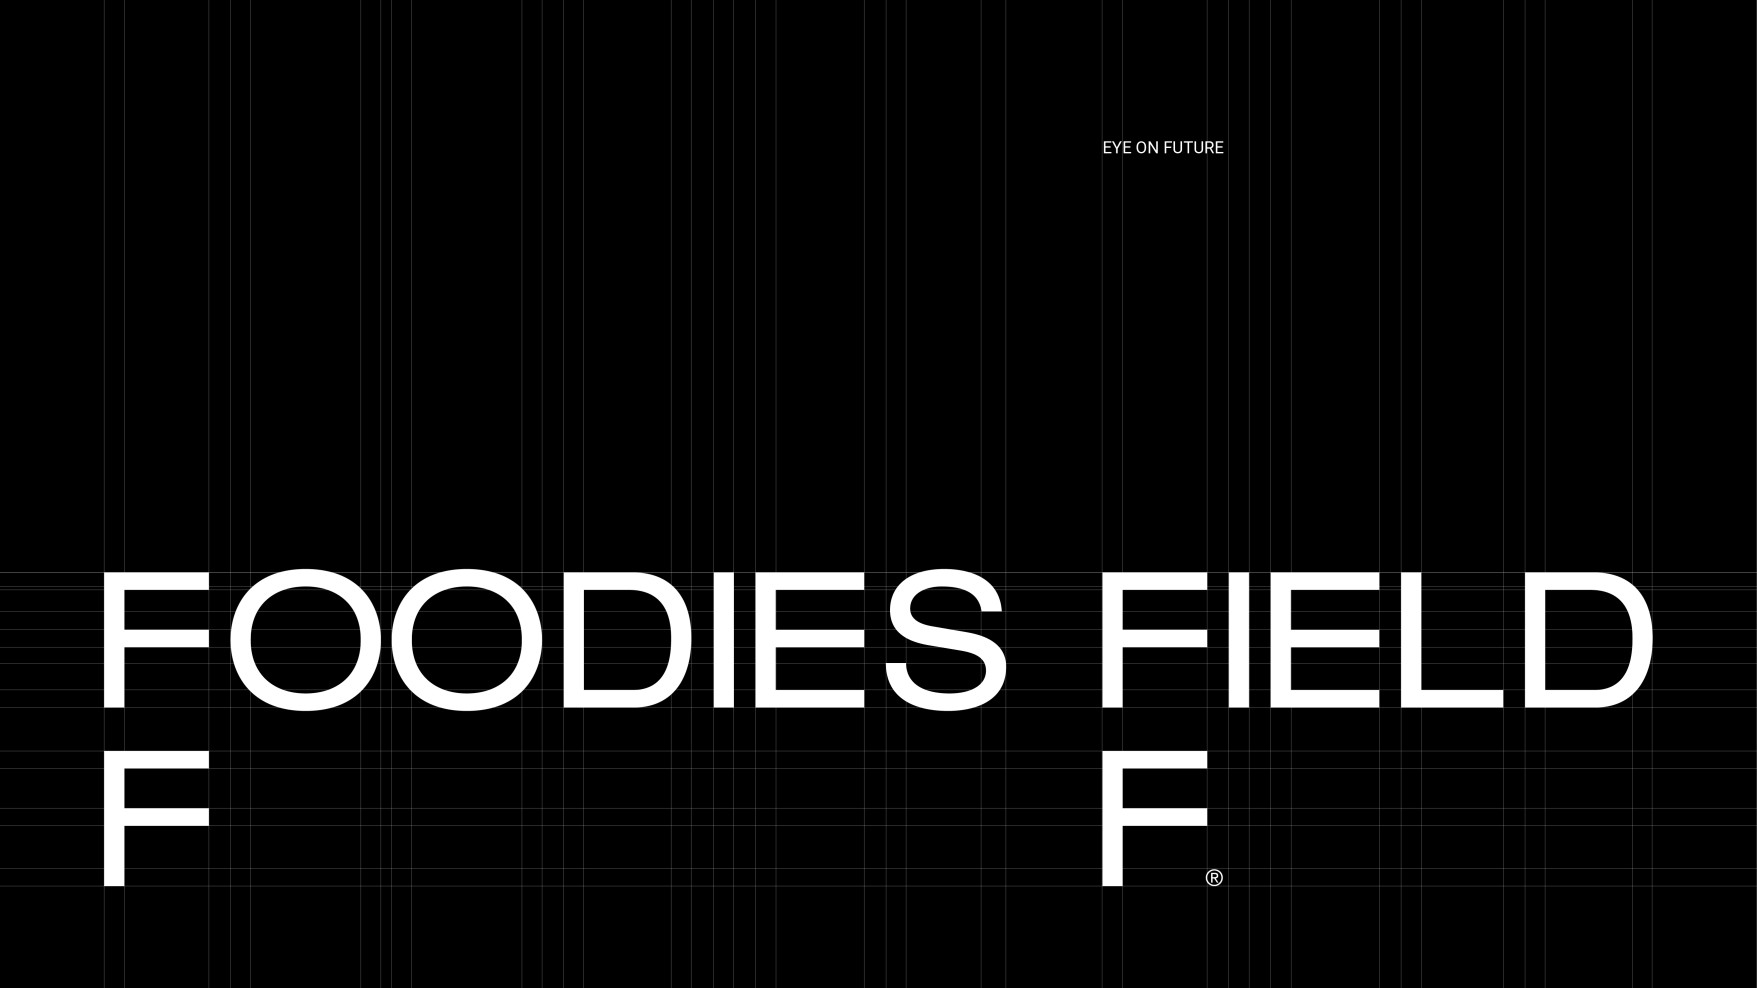  foodiesfield-f-02-skEiF